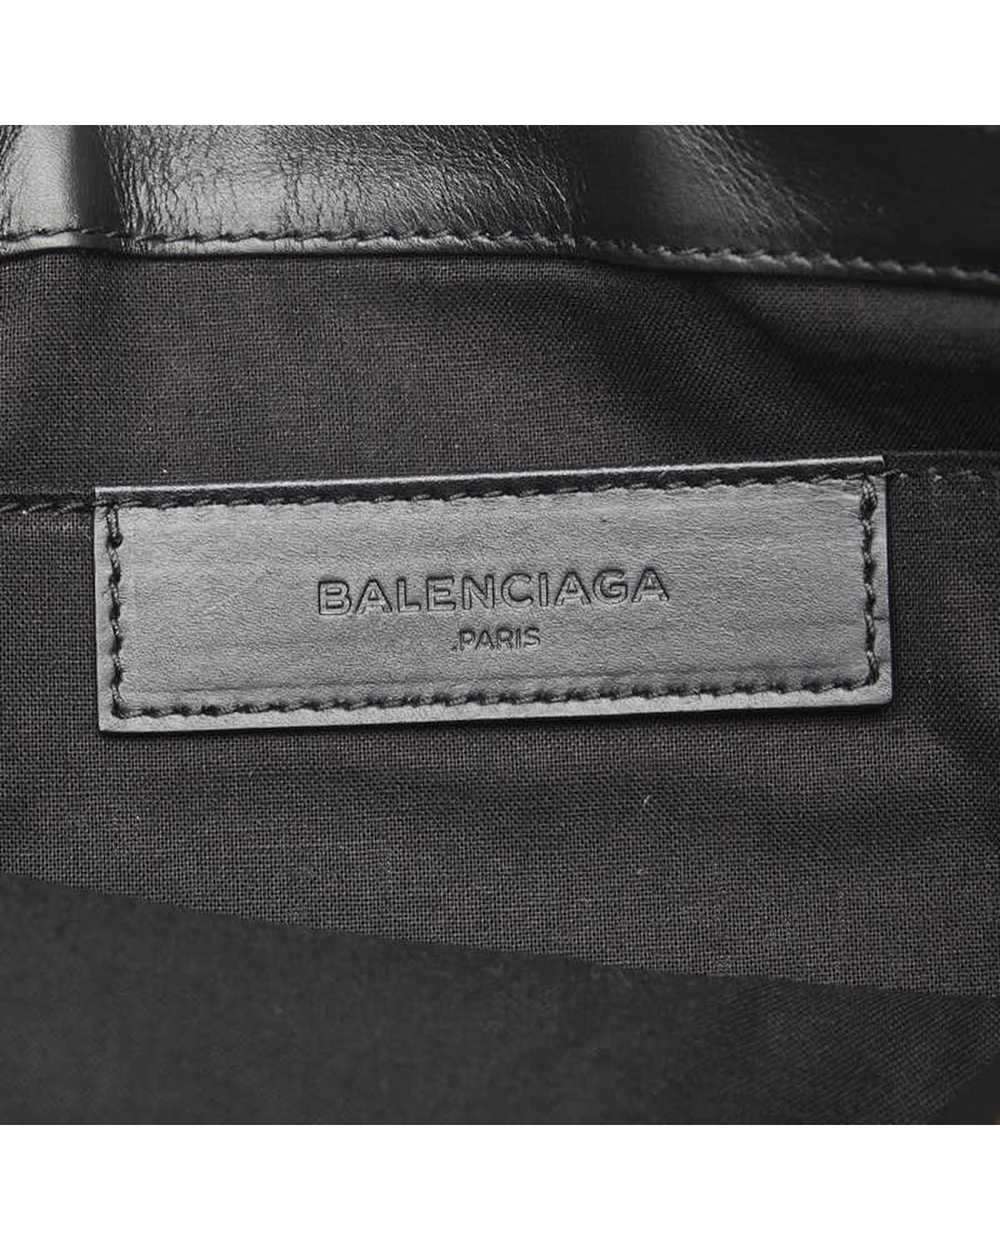 Balenciaga Navy Canvas Clutch Bag in Excellent Co… - image 7